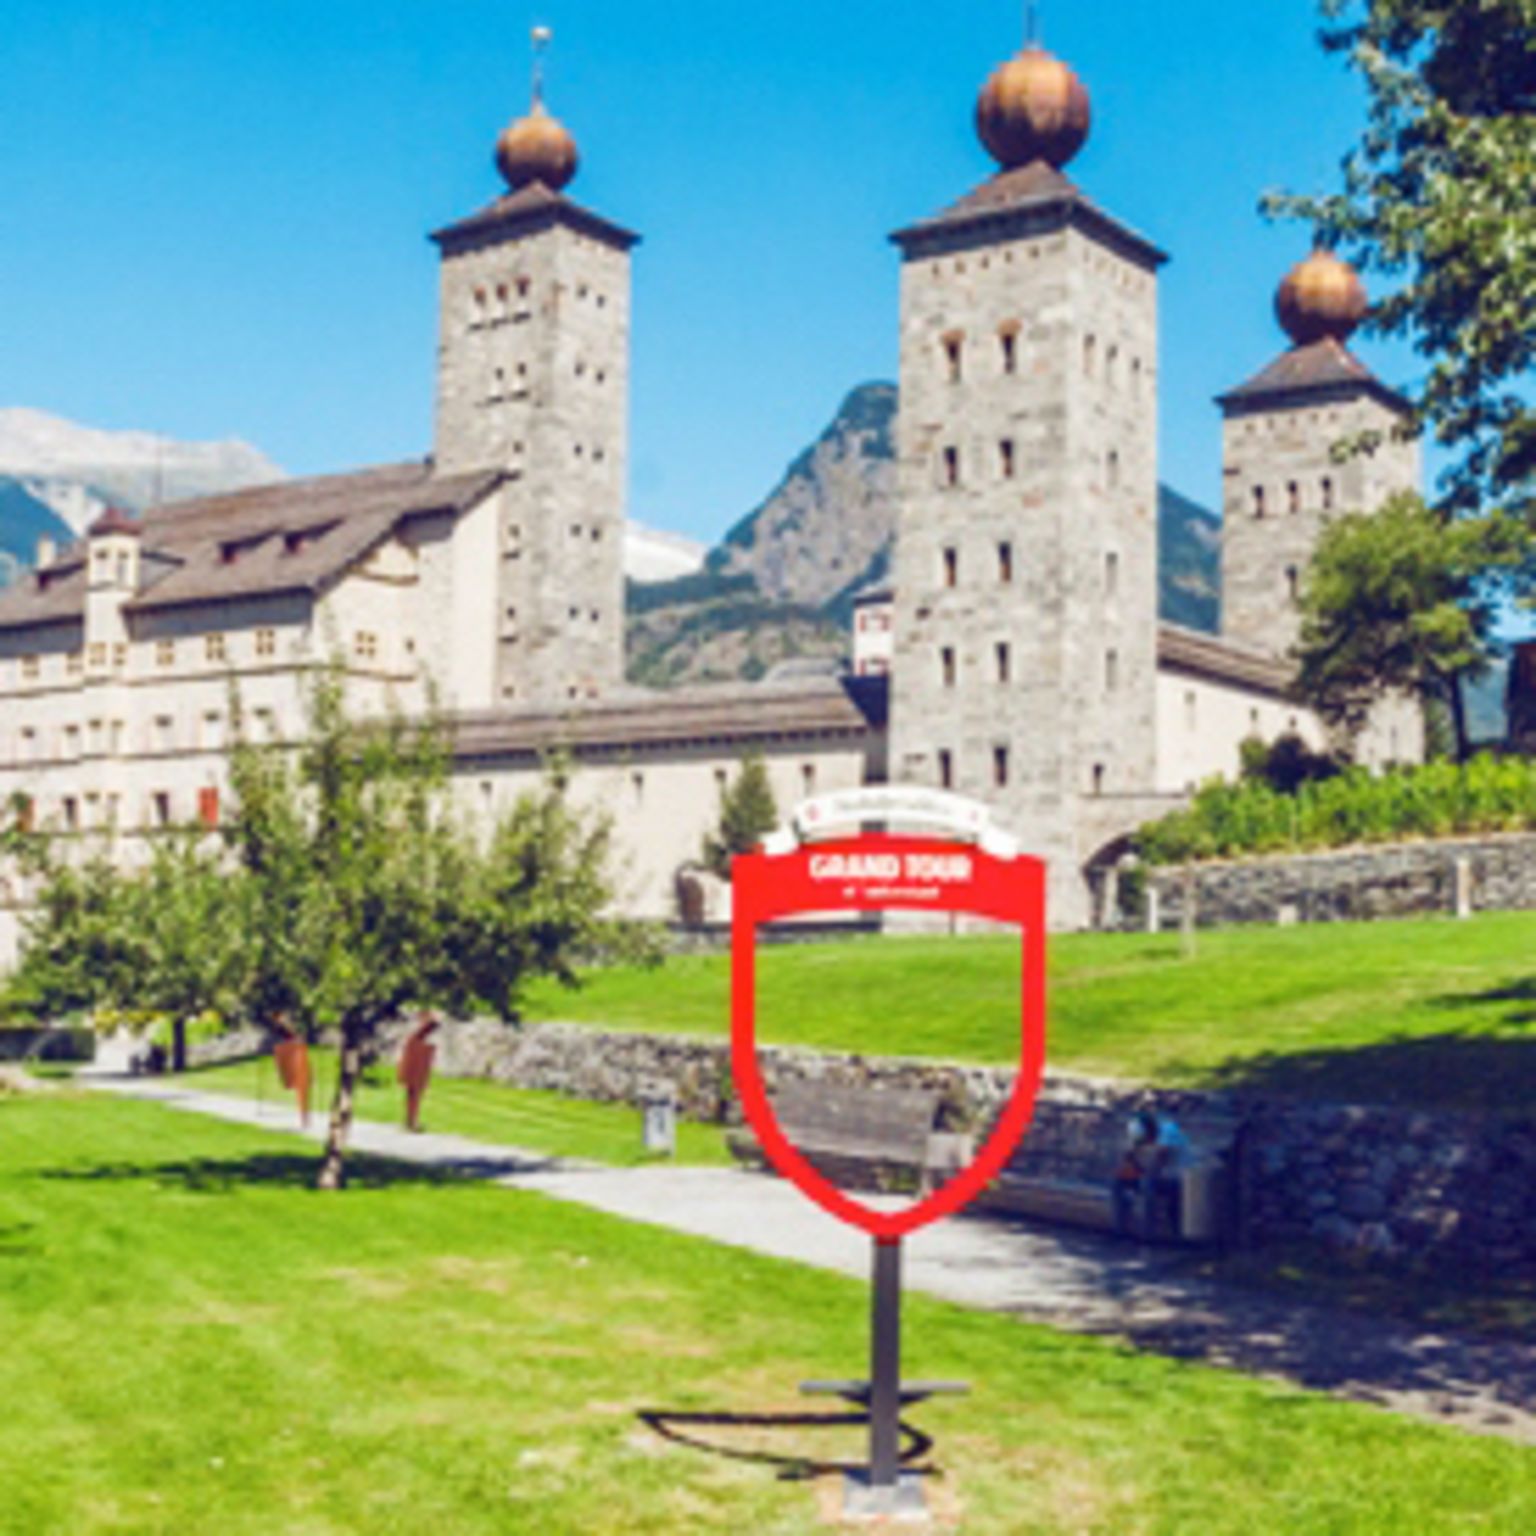 Spot à photo au château de Stockalper, Grand Tour of Switzerland, Brigue, Valais